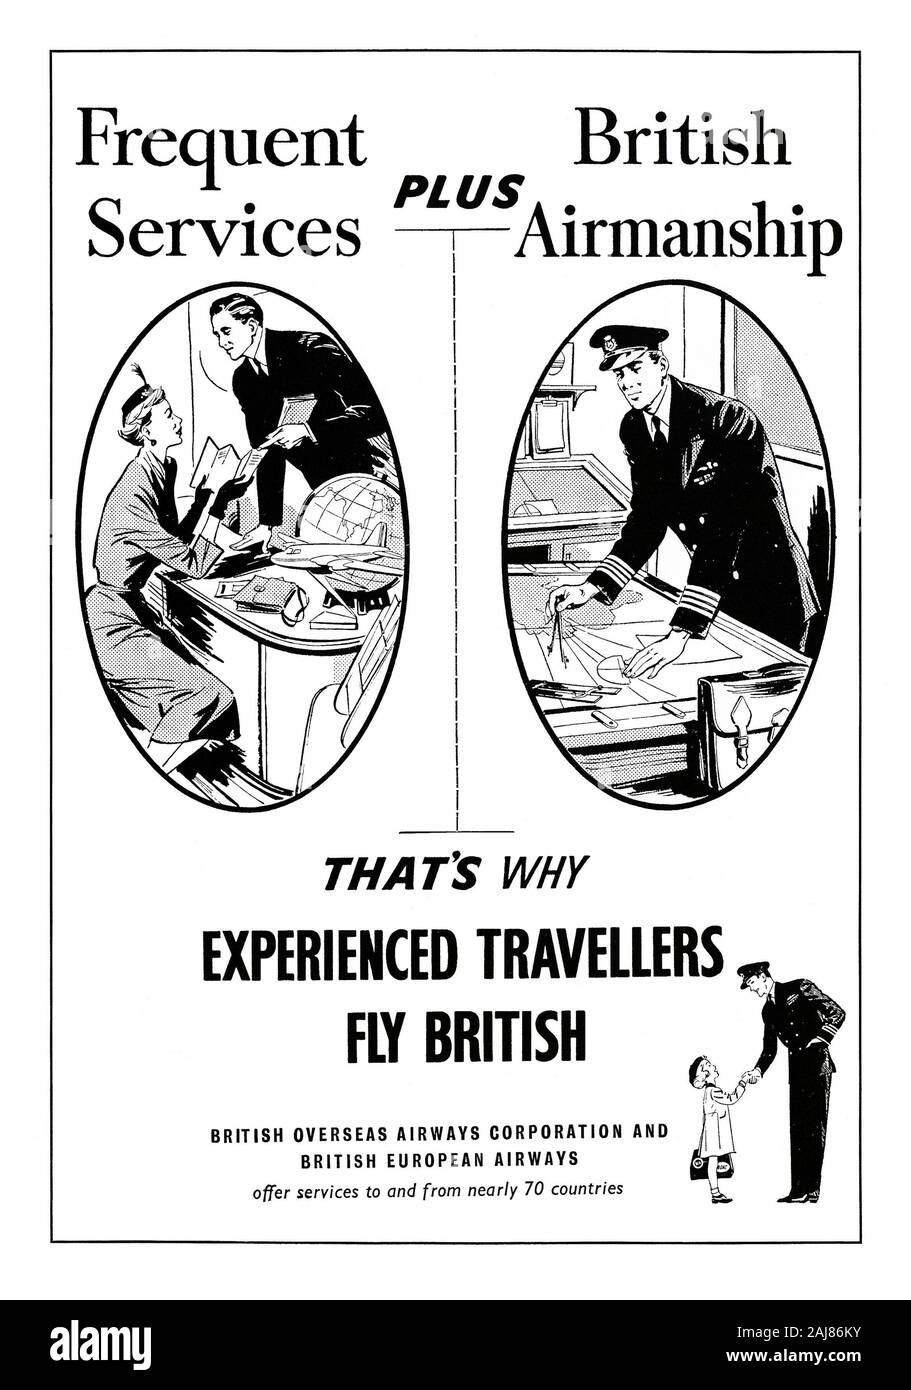 Anzeige für eine British Overseas Airways Corporation (BOAC) und der British European Airways (BEA), 1951. Dies erschien im Magazin vom 2. Juni 1951. Die drei Abbildungen verfügen über eine Frau Inspektion reisen Literatur, ein Pilot seinen Kurs auf einem Diagramm und einem kleinen Mädchen die Hände schütteln mit einem Pilotprojekt. Die Kopie betont ihre häufige Dienste und die ordnungsgemäße Flugzeugführung für das Personal. Die beiden Unternehmen wurden später British Airways (BA). Stockfoto